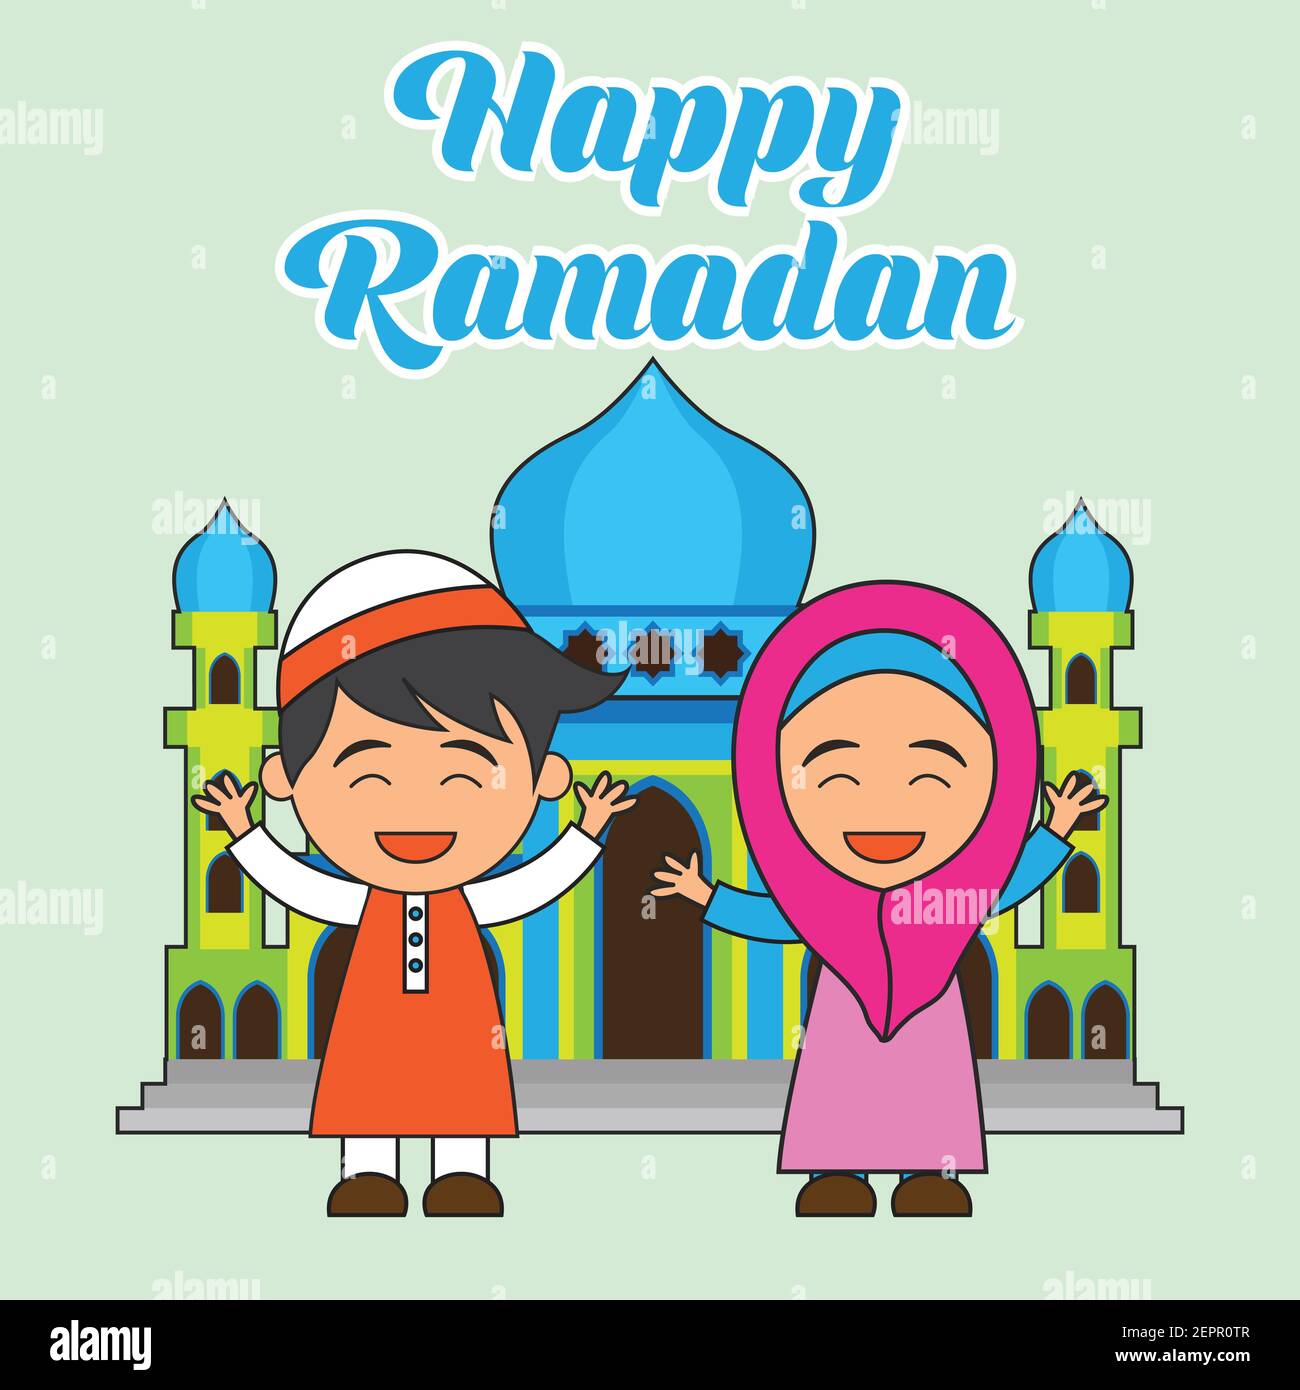 Ramadan mubarak happy Ramadan Mubarak